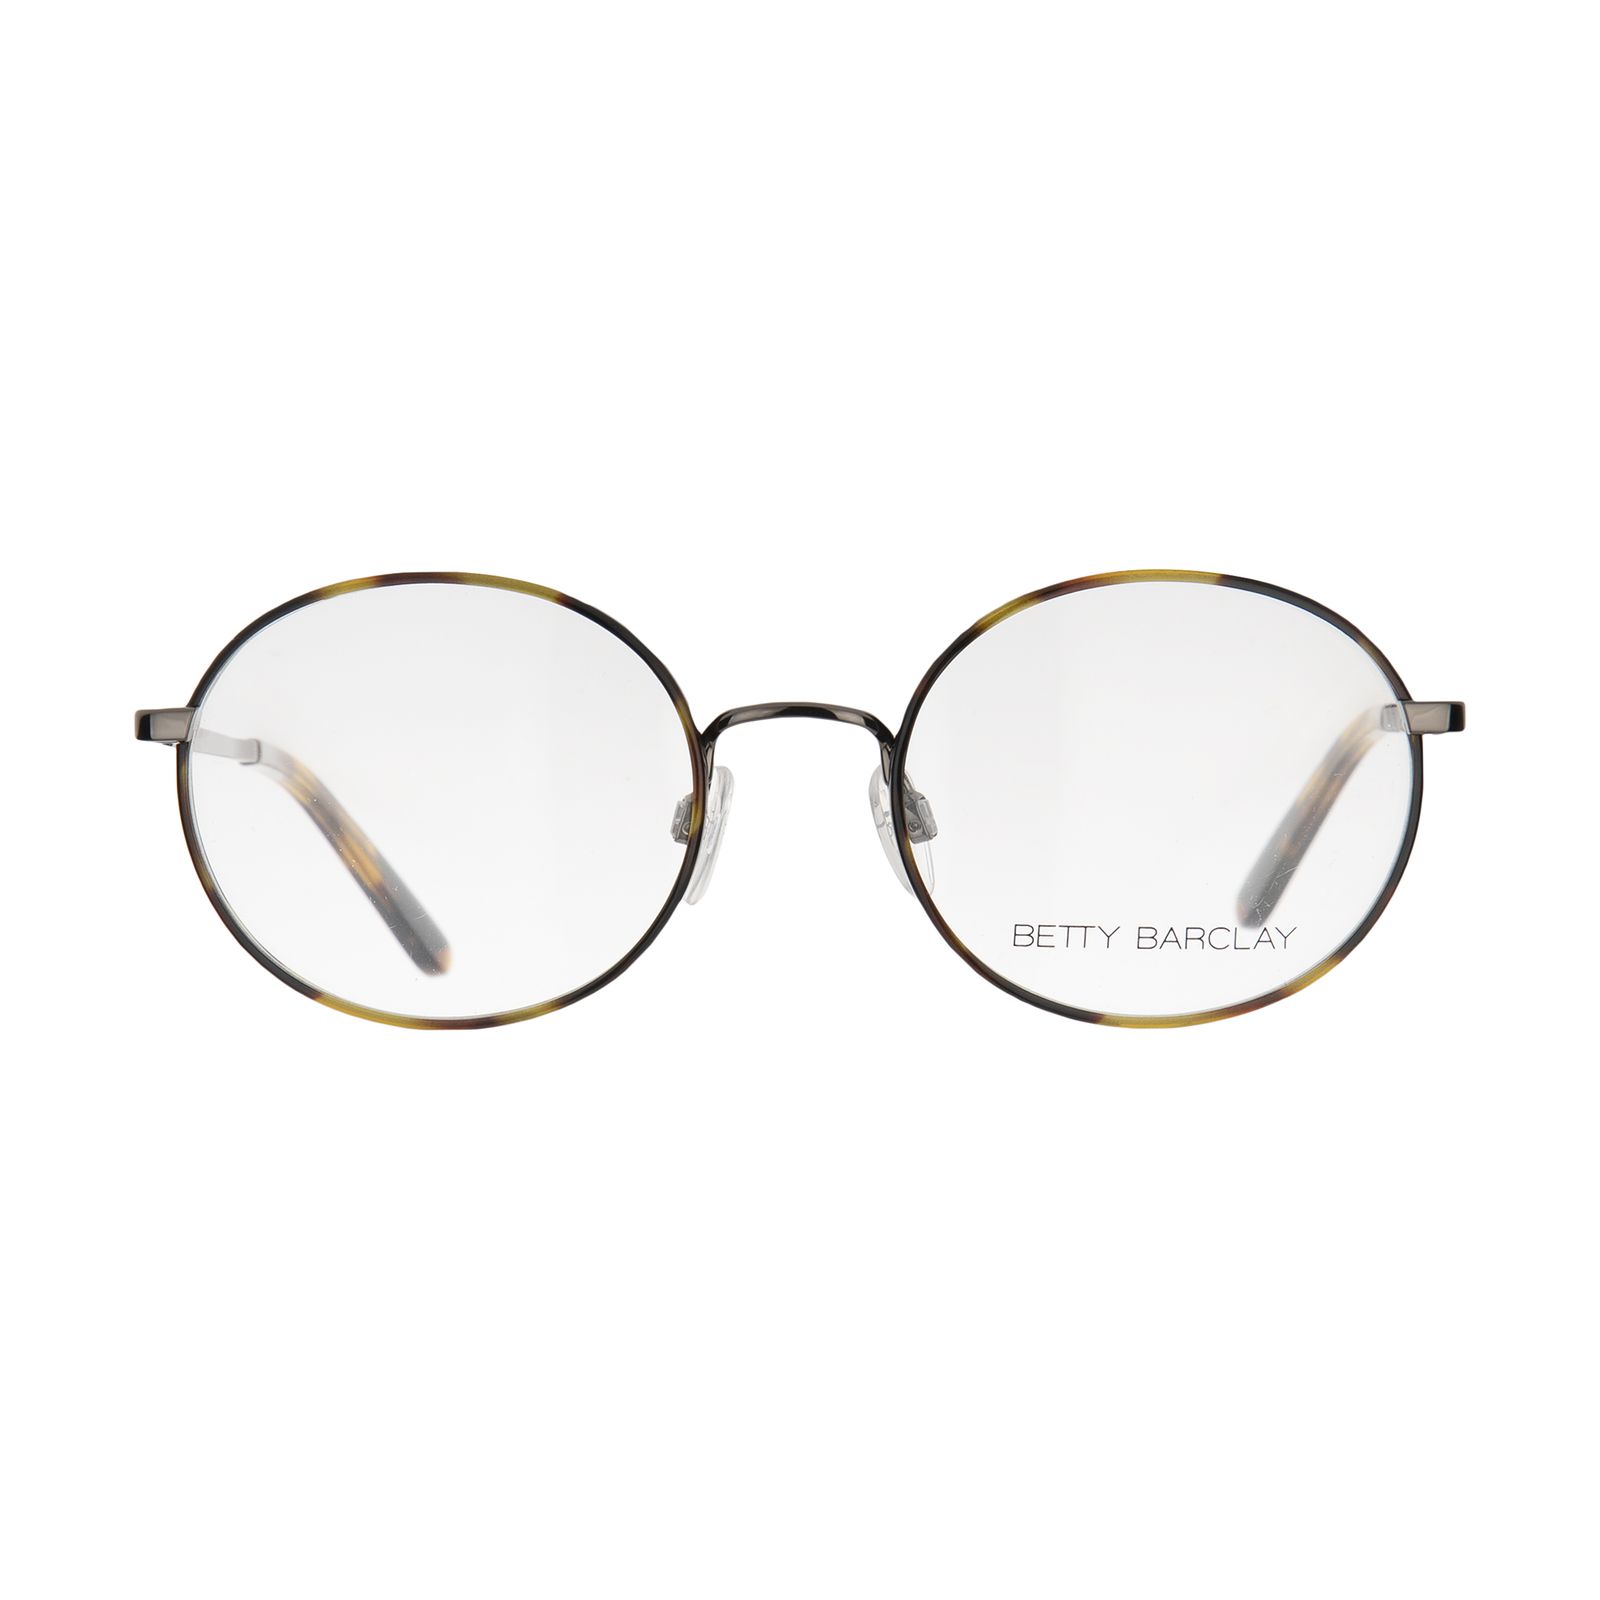 فریم عینک طبی زنانه بتی بارکلی مدل 51168-662 -  - 1